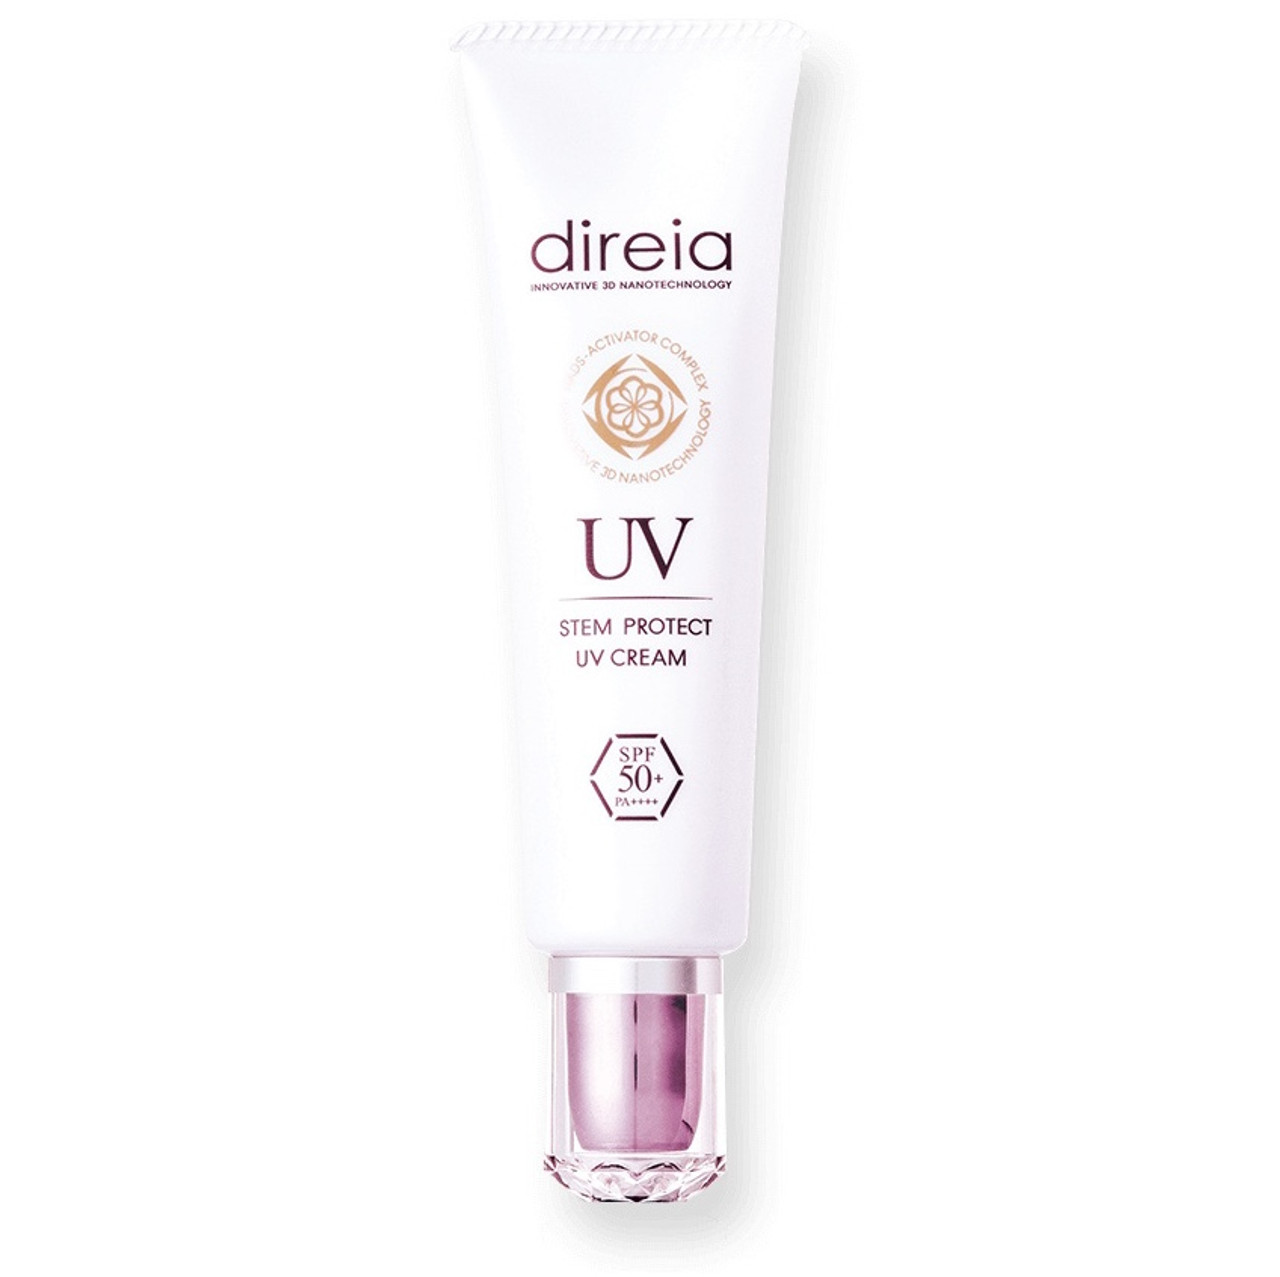 Direia Stem Protect UV Cream